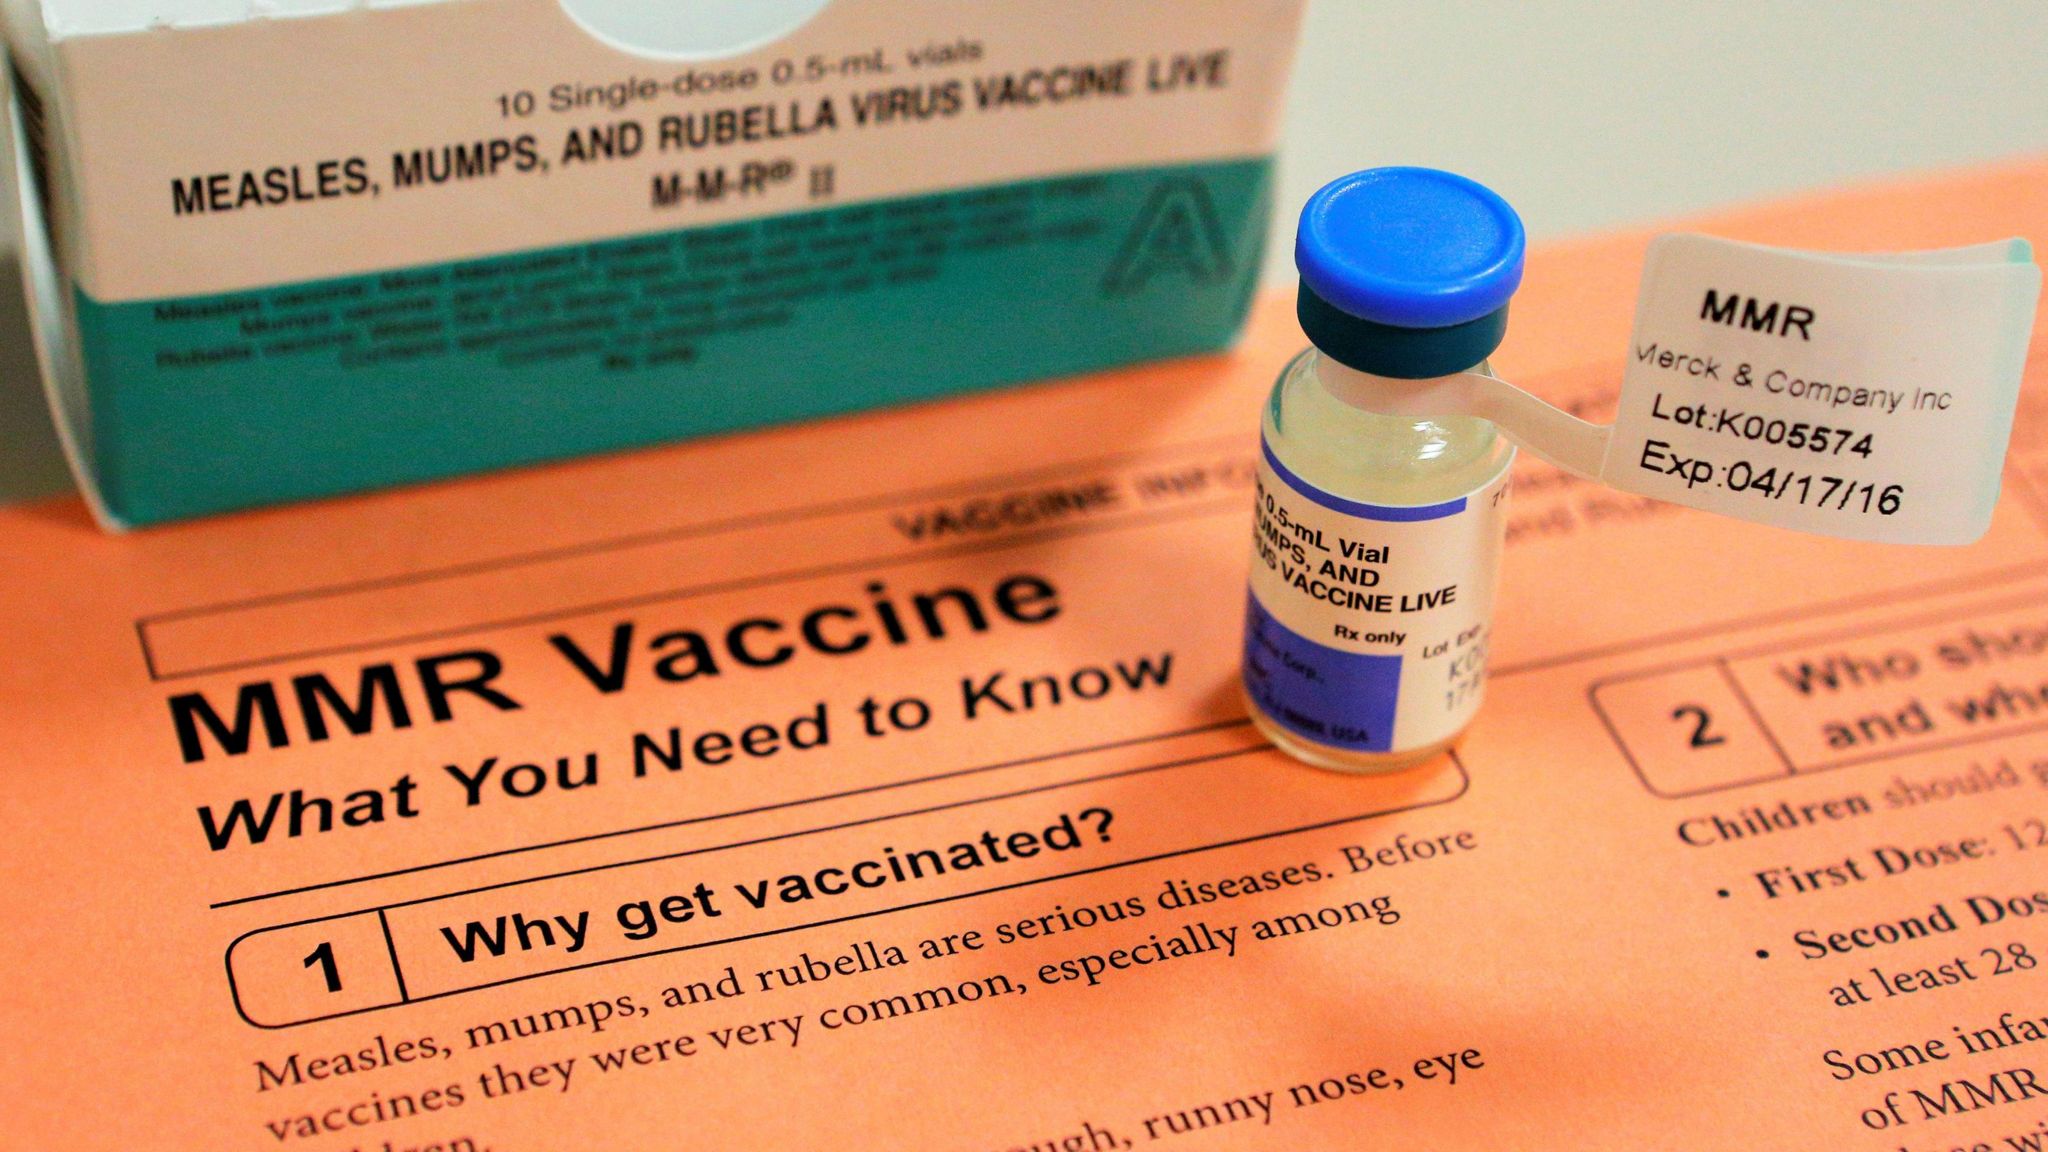 MMR vaccination fact sheet